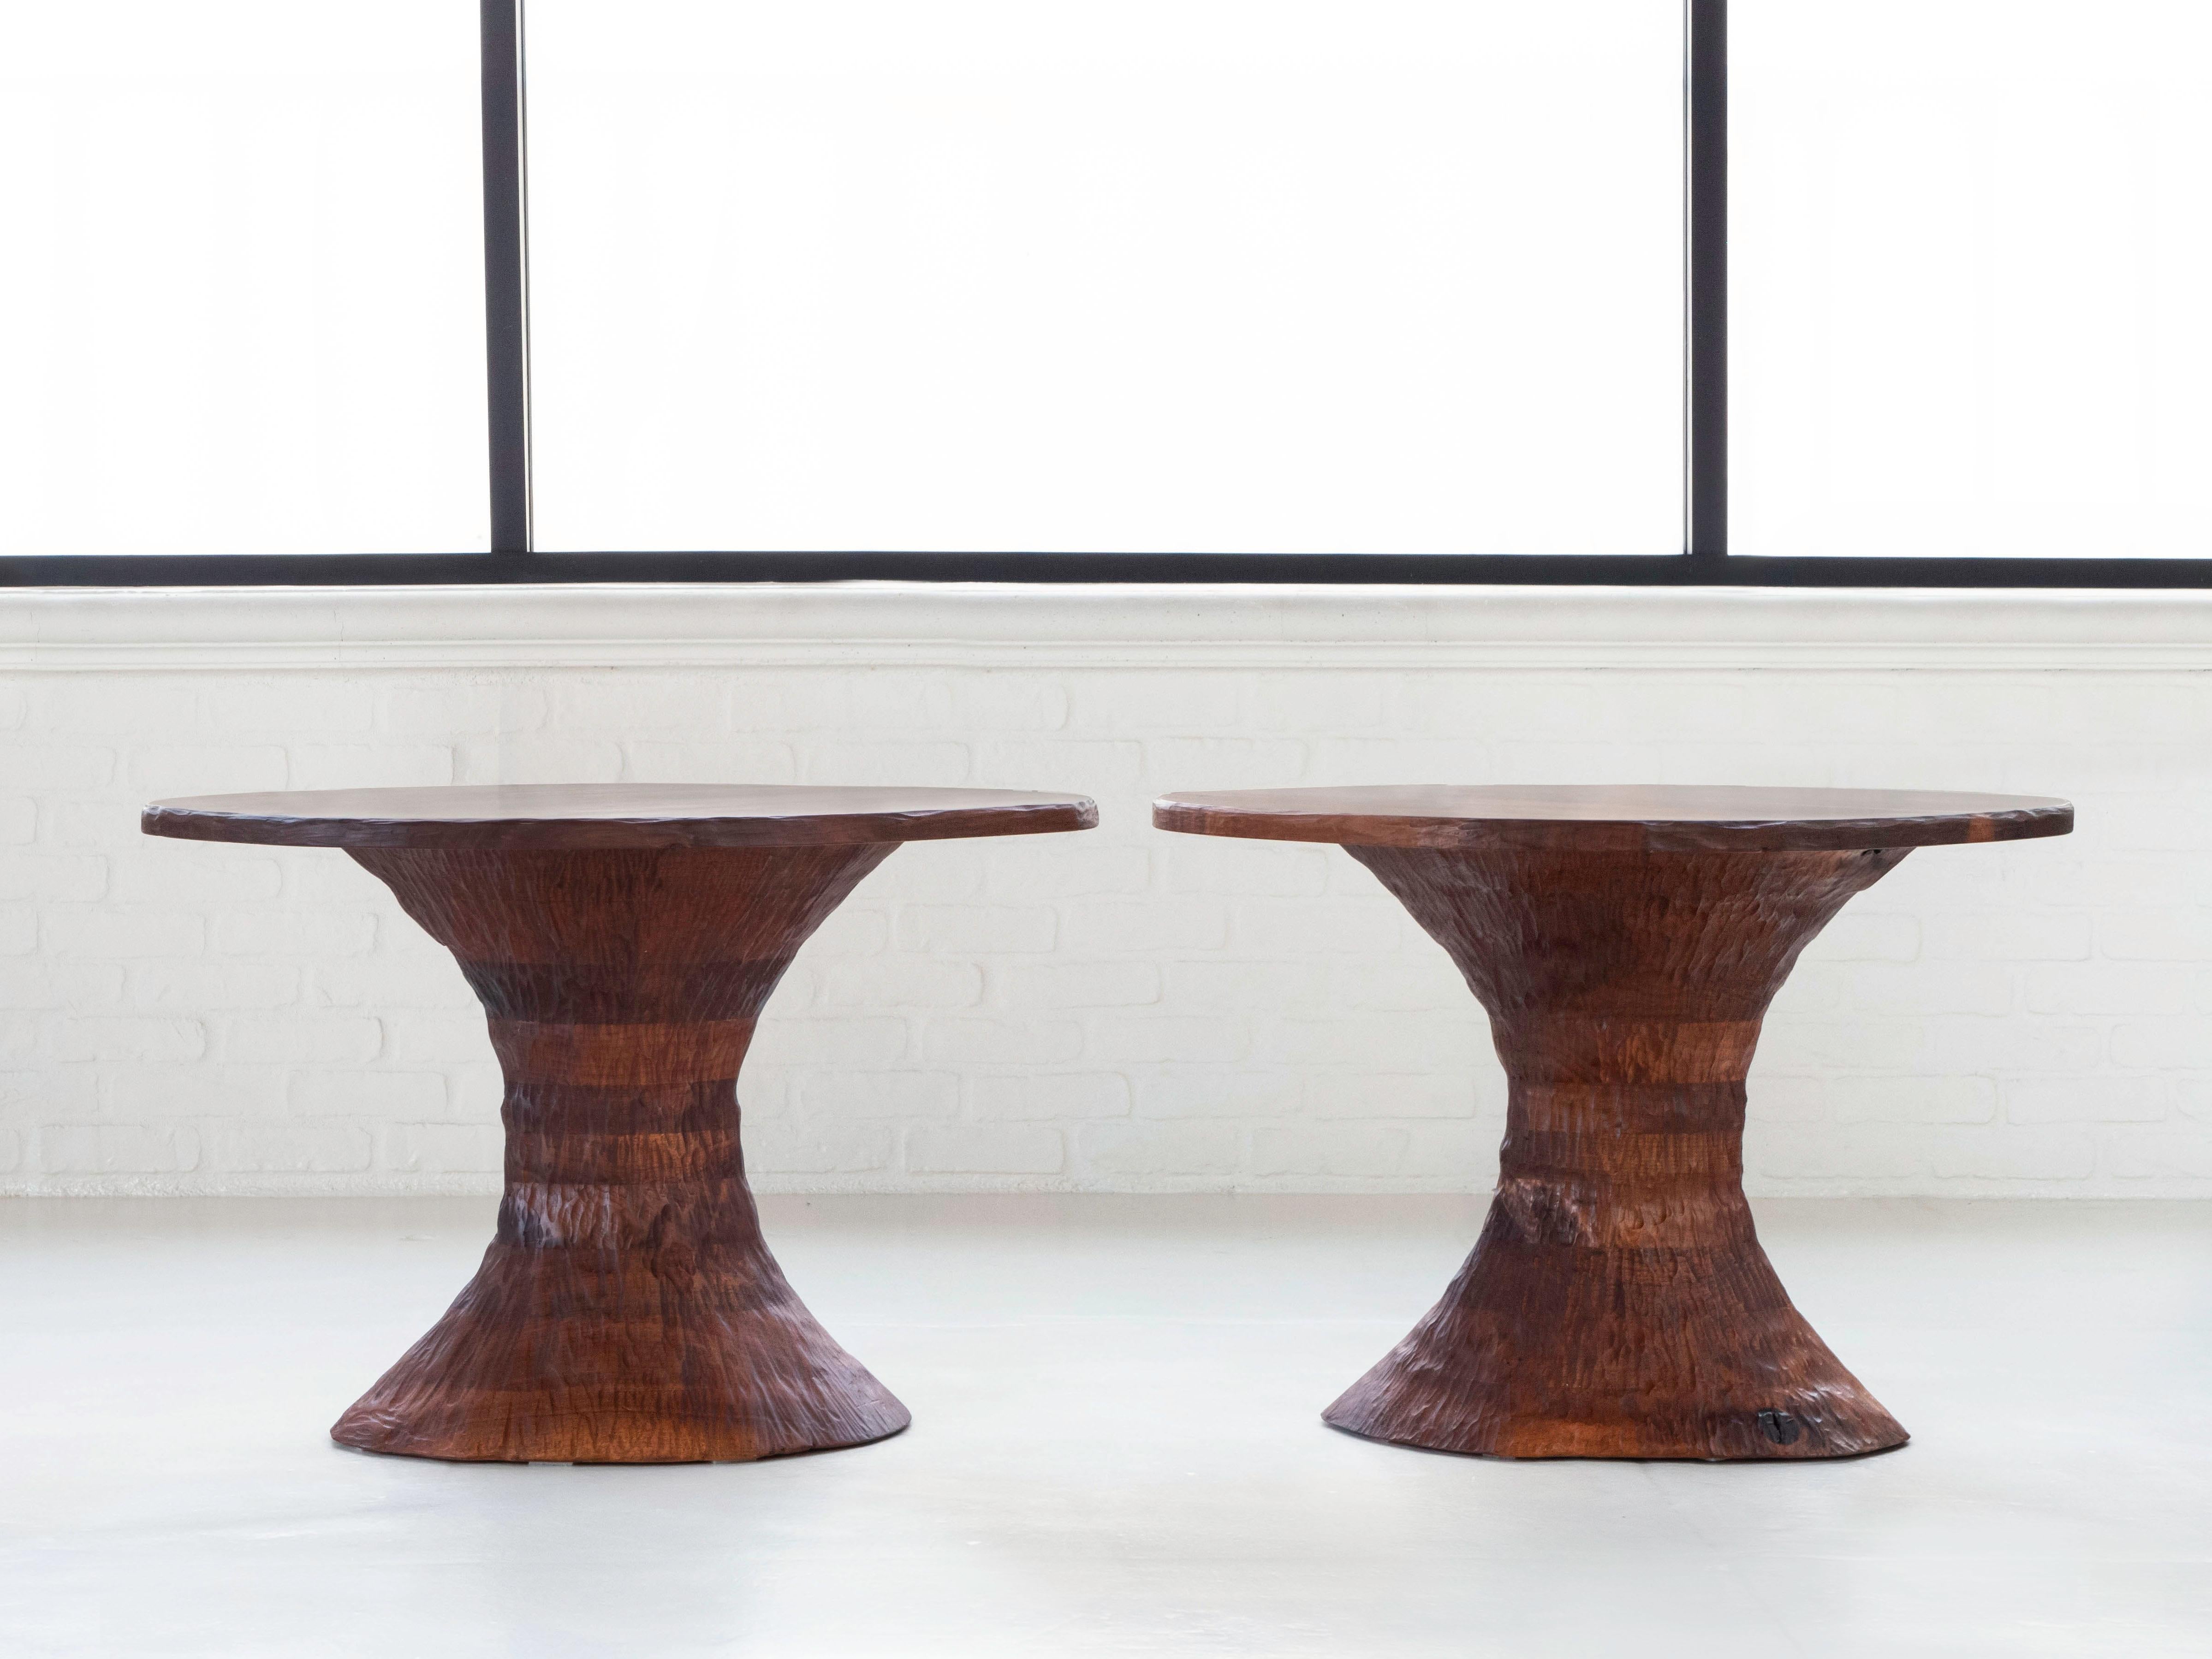 Cette paire de tables d'appoint a été fabriquée par Phillip Lloyds Powell, vers les années 1960. Il est probable que les tables aient été commandées en tant que compagnons présentant des formes et des dimensions relativement similaires. Les surfaces